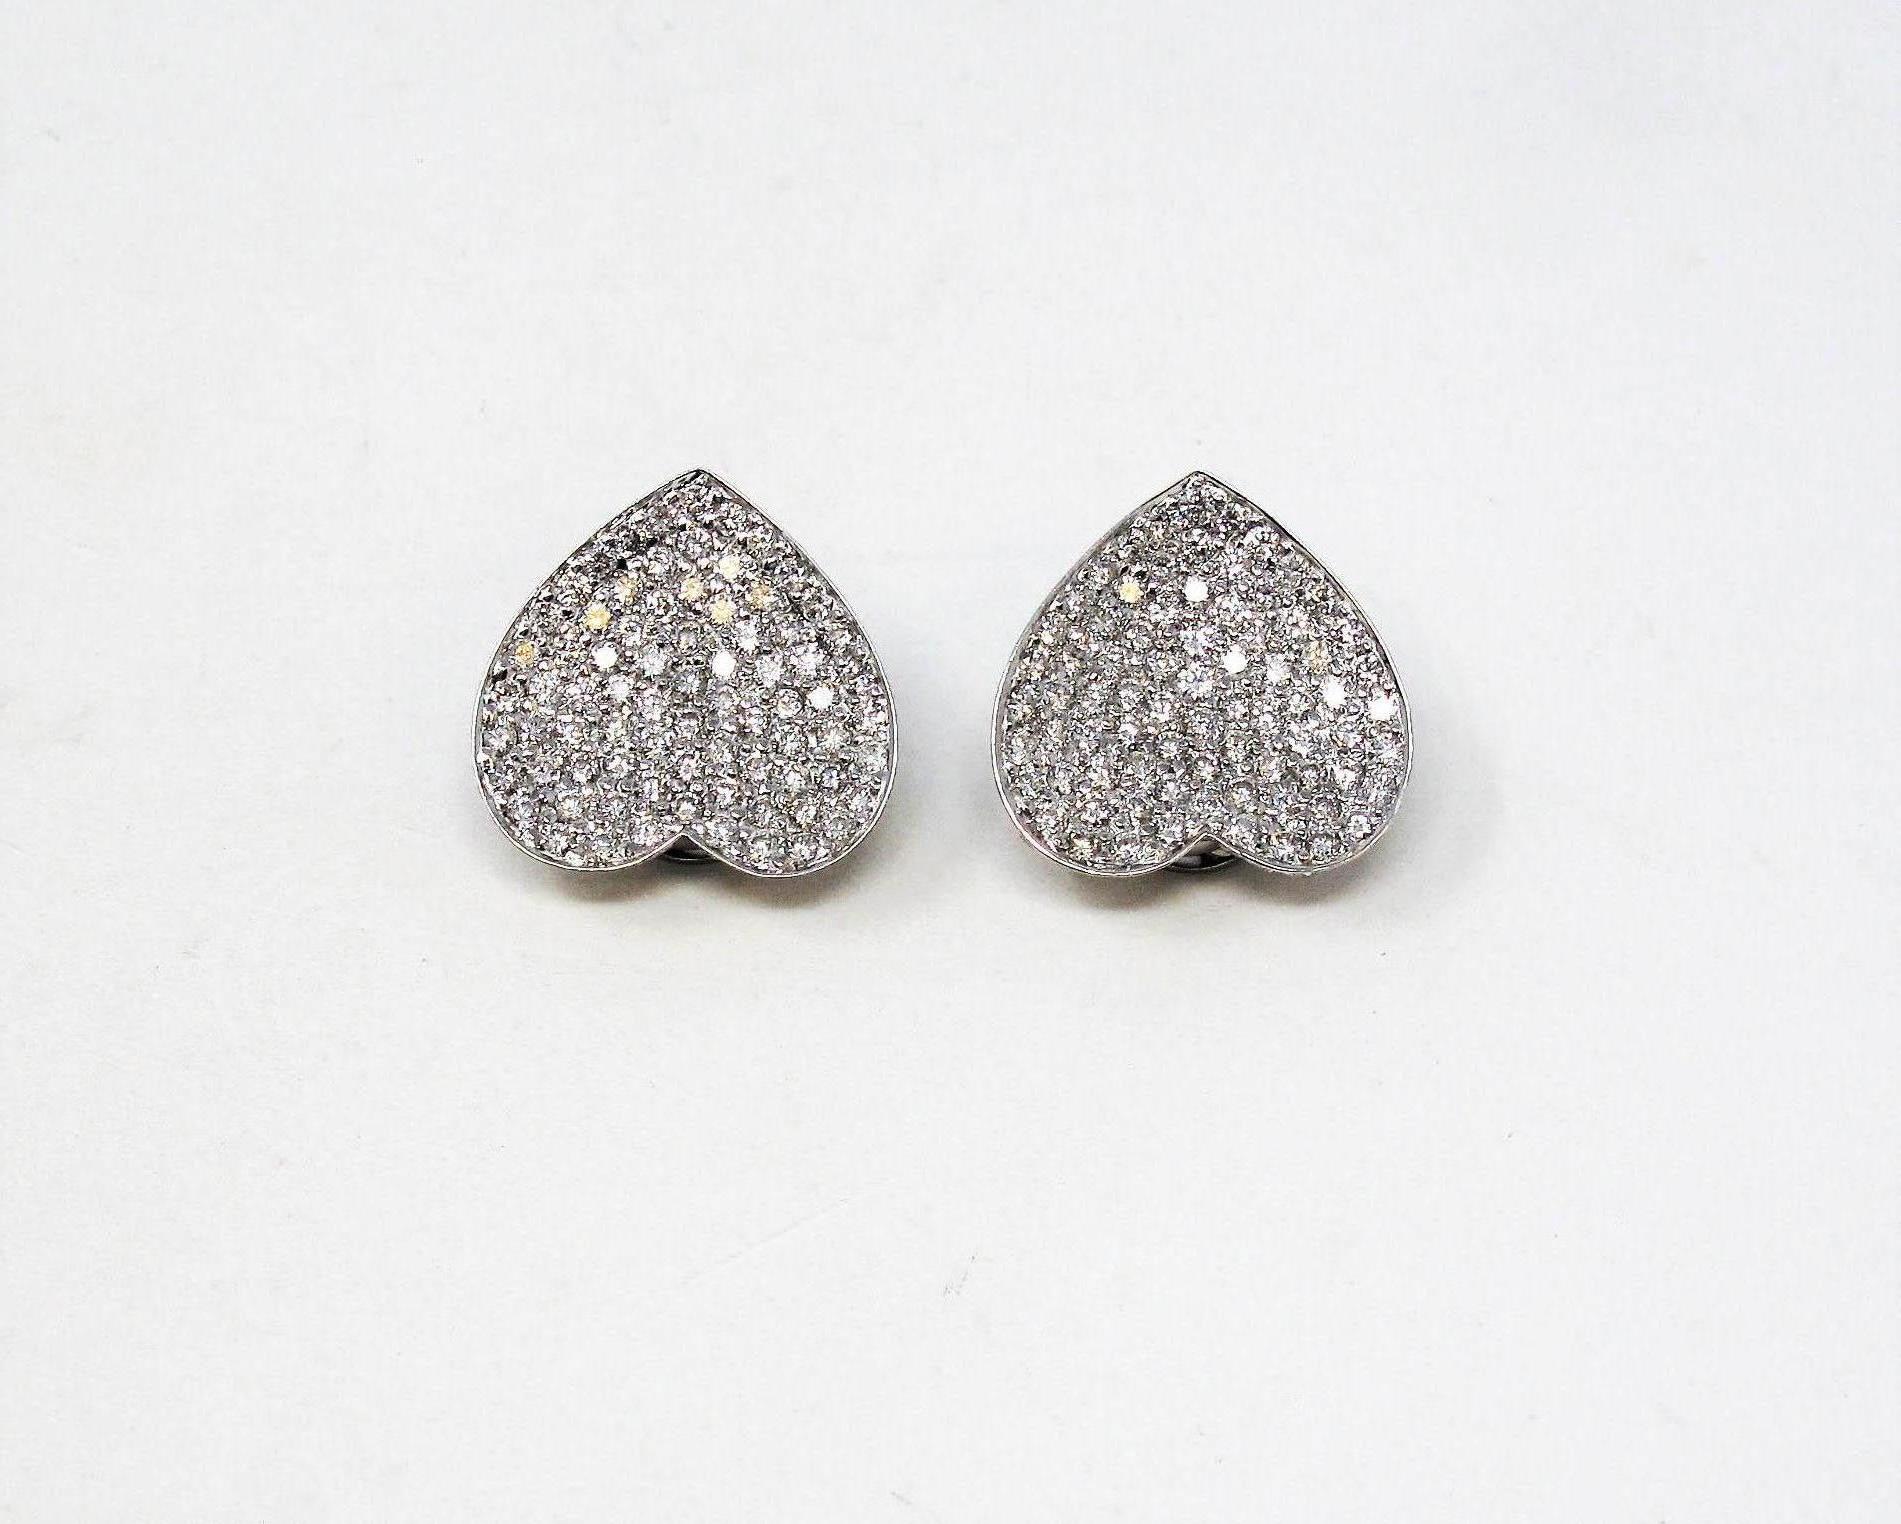 black heart shaped earrings